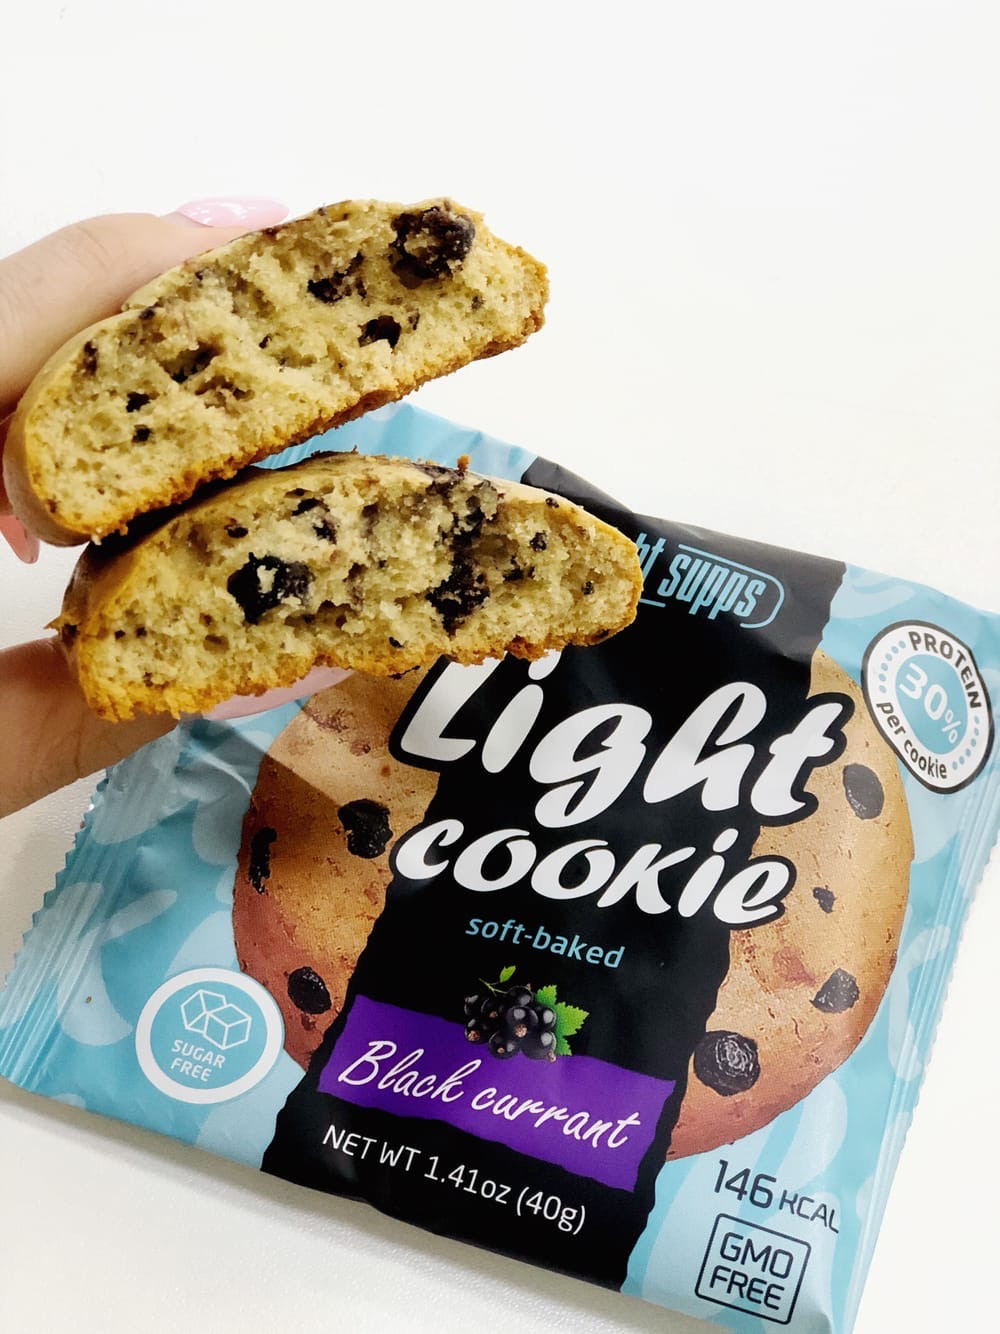 Печенье Light Supps Light Cookie (40 гр.)